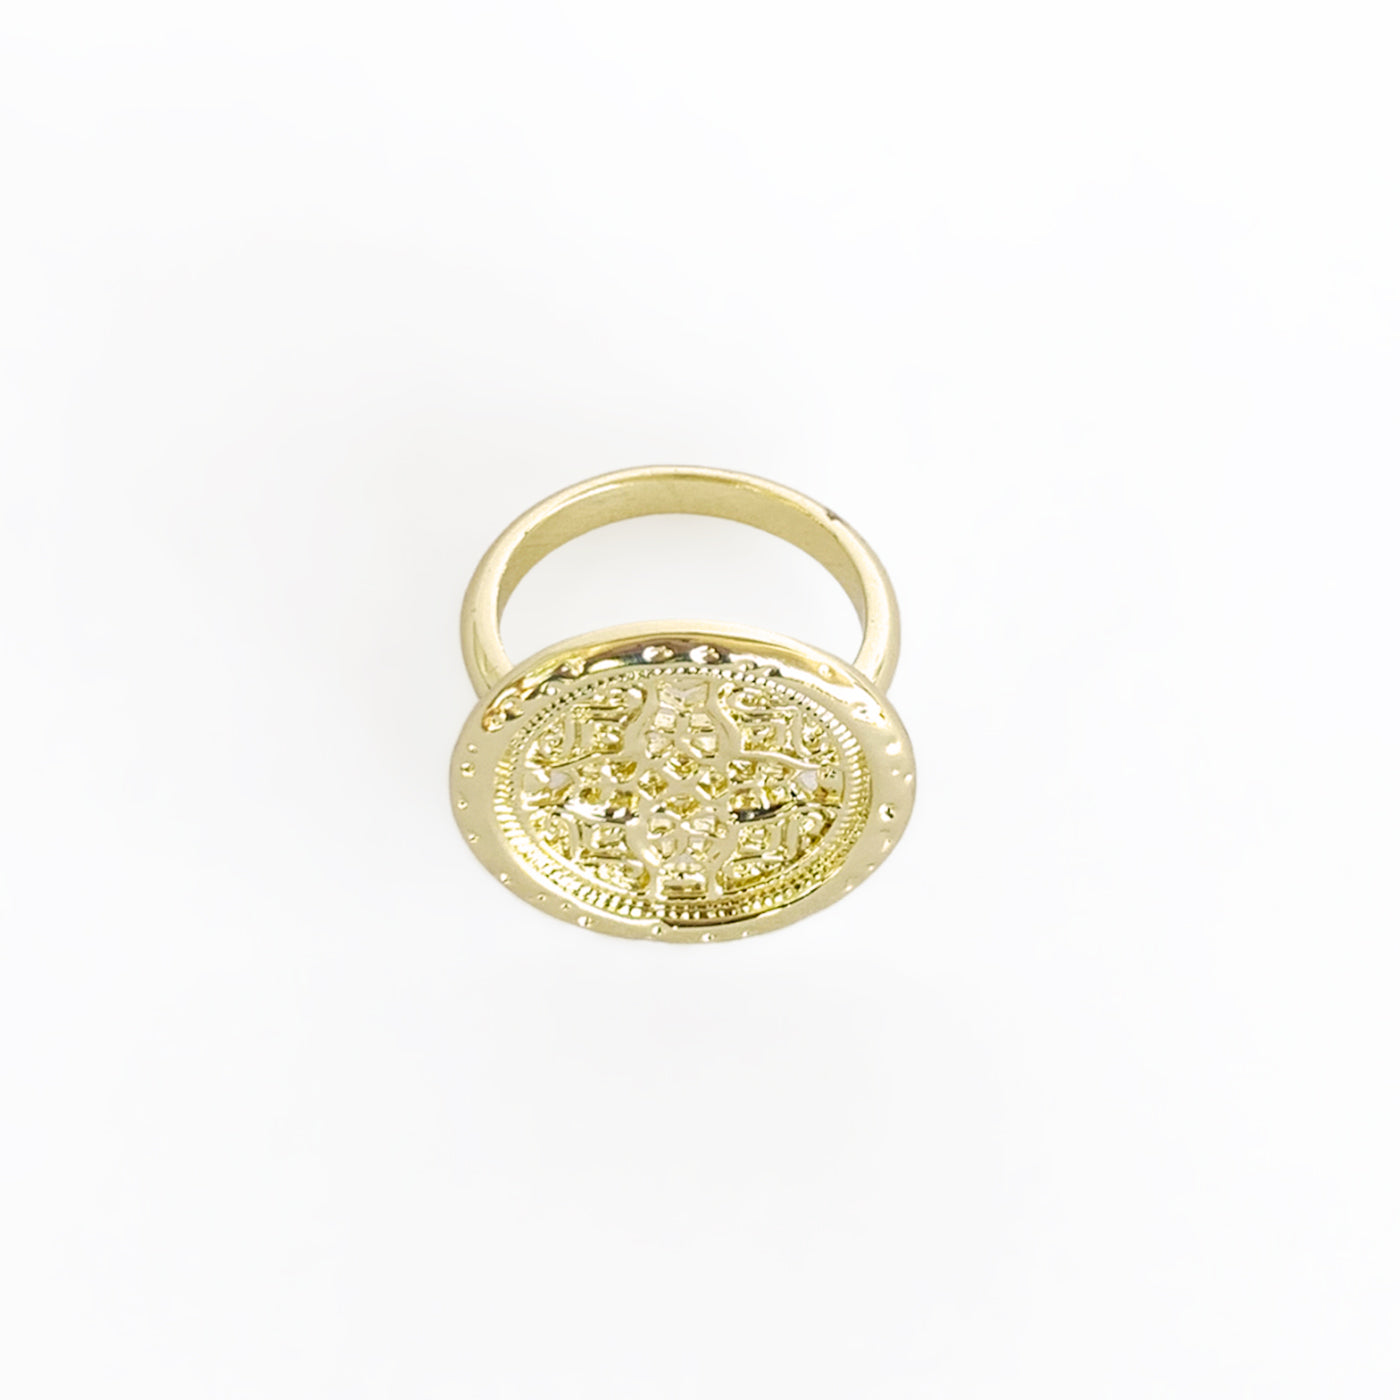 Rosette Medallion Ring